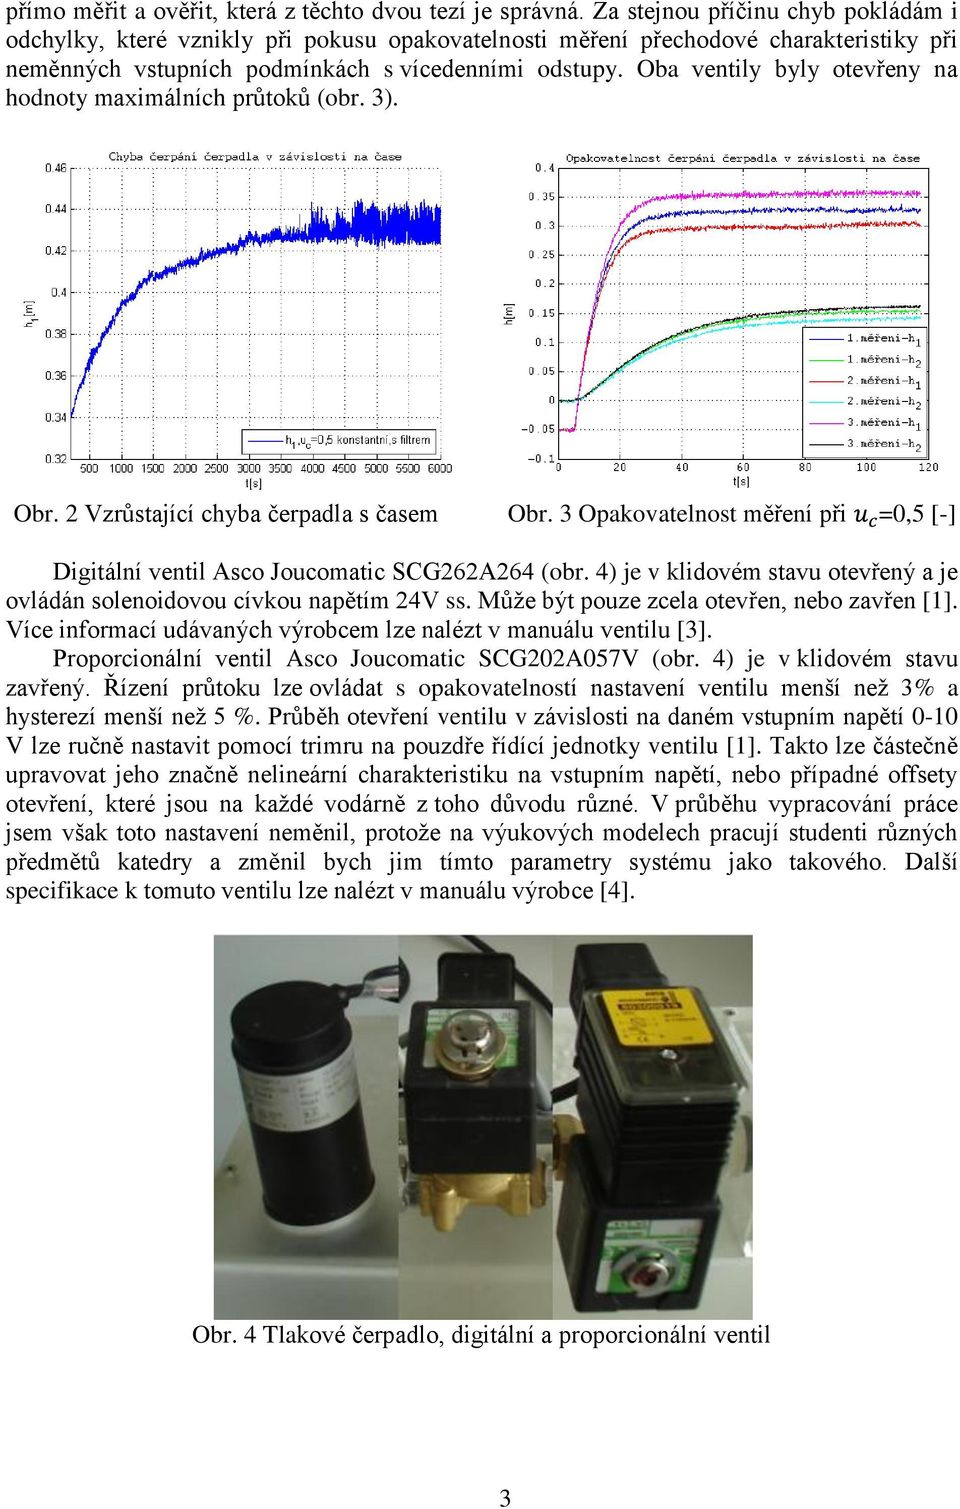 Oba ventily byly otevřeny na hodnoty maximálních průtoků (obr. 3). Obr. 2 Vzrůstající chyba čerpadla s časem Obr. 3 Opakovatelnost měření při =0,5 [-] Digitální ventil Asco Joucomatic SCG262A264 (obr.